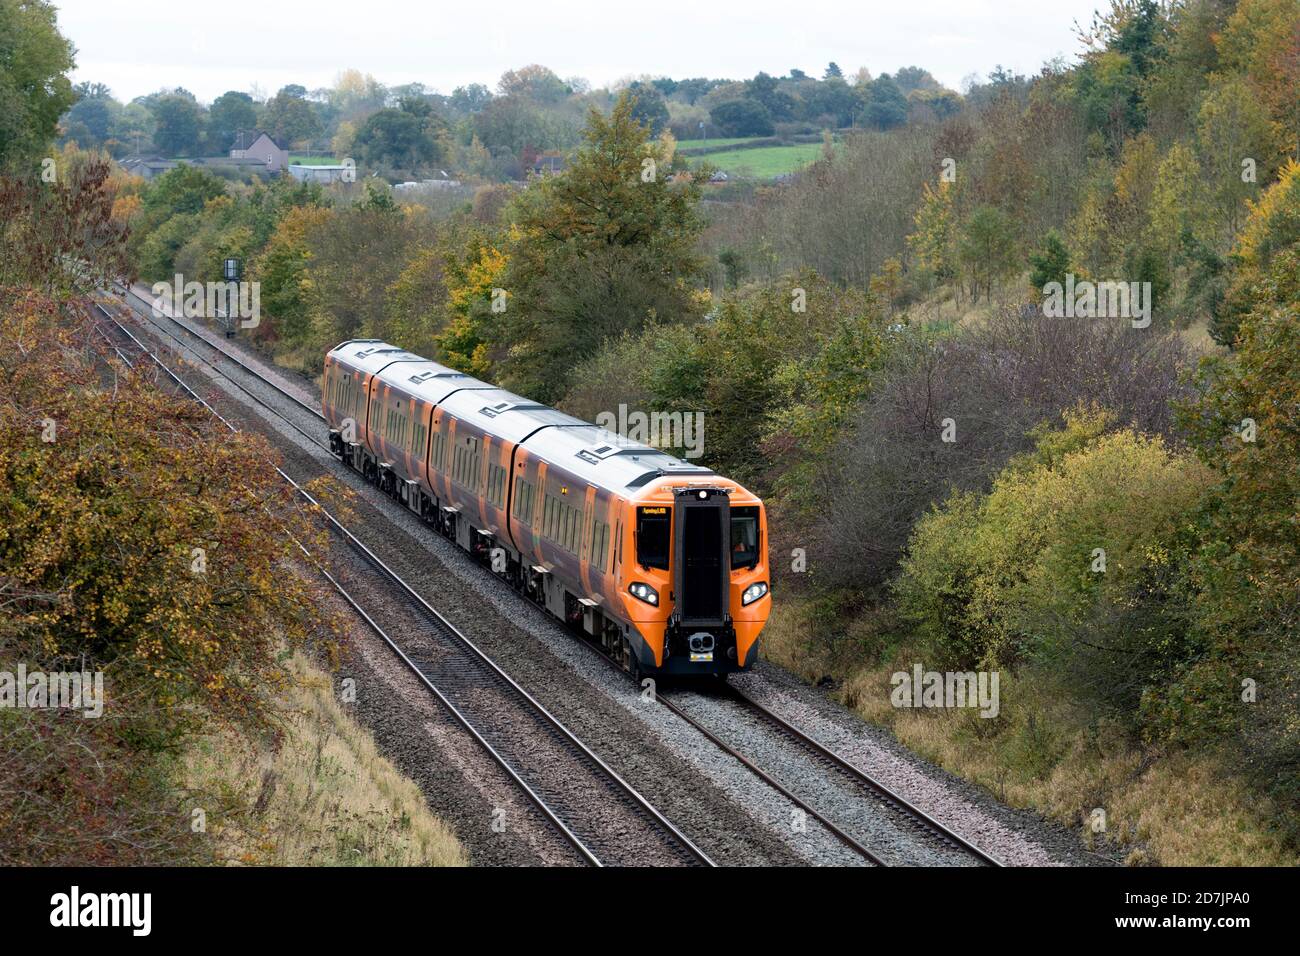 West Midlands Ferrocarril diesel clase 196 en Rowington en otoño, Warwickshire, Reino Unido Foto de stock